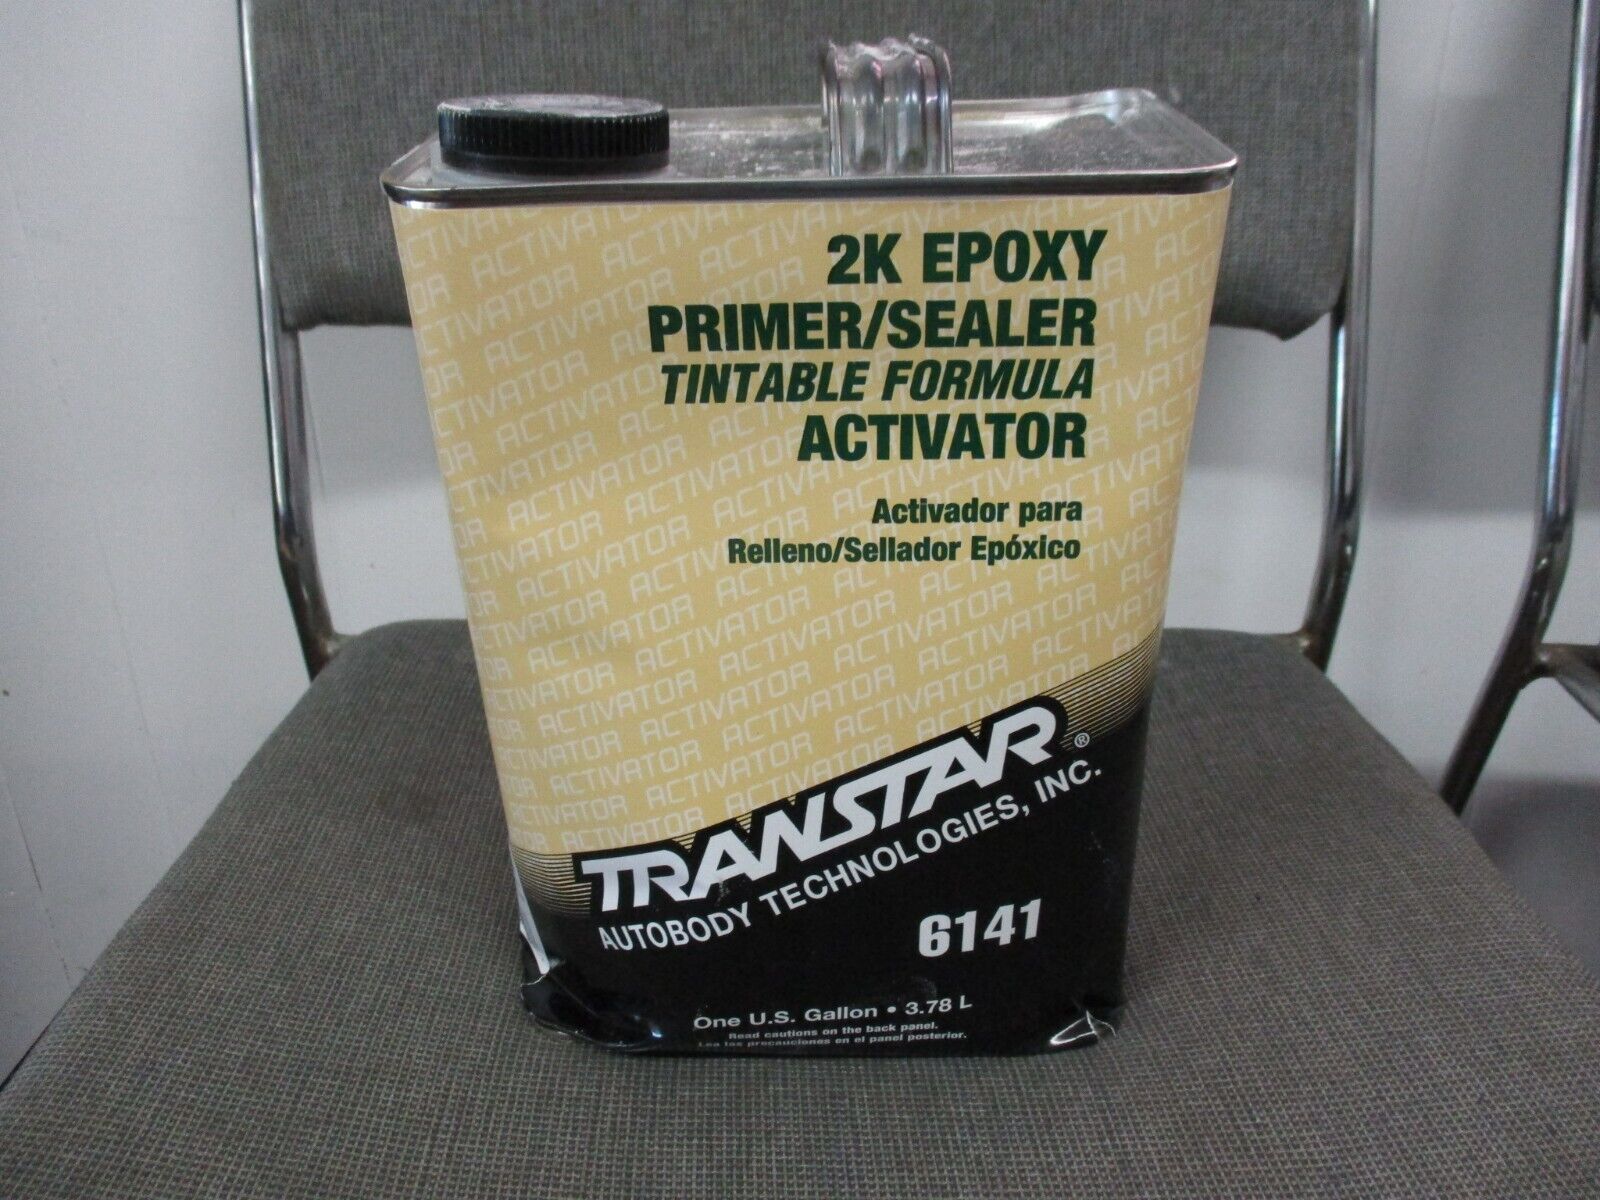 2k Epoxy Primer/sealer Tintable Formula Activator 1-gallon 6141 Quick Ship Nr